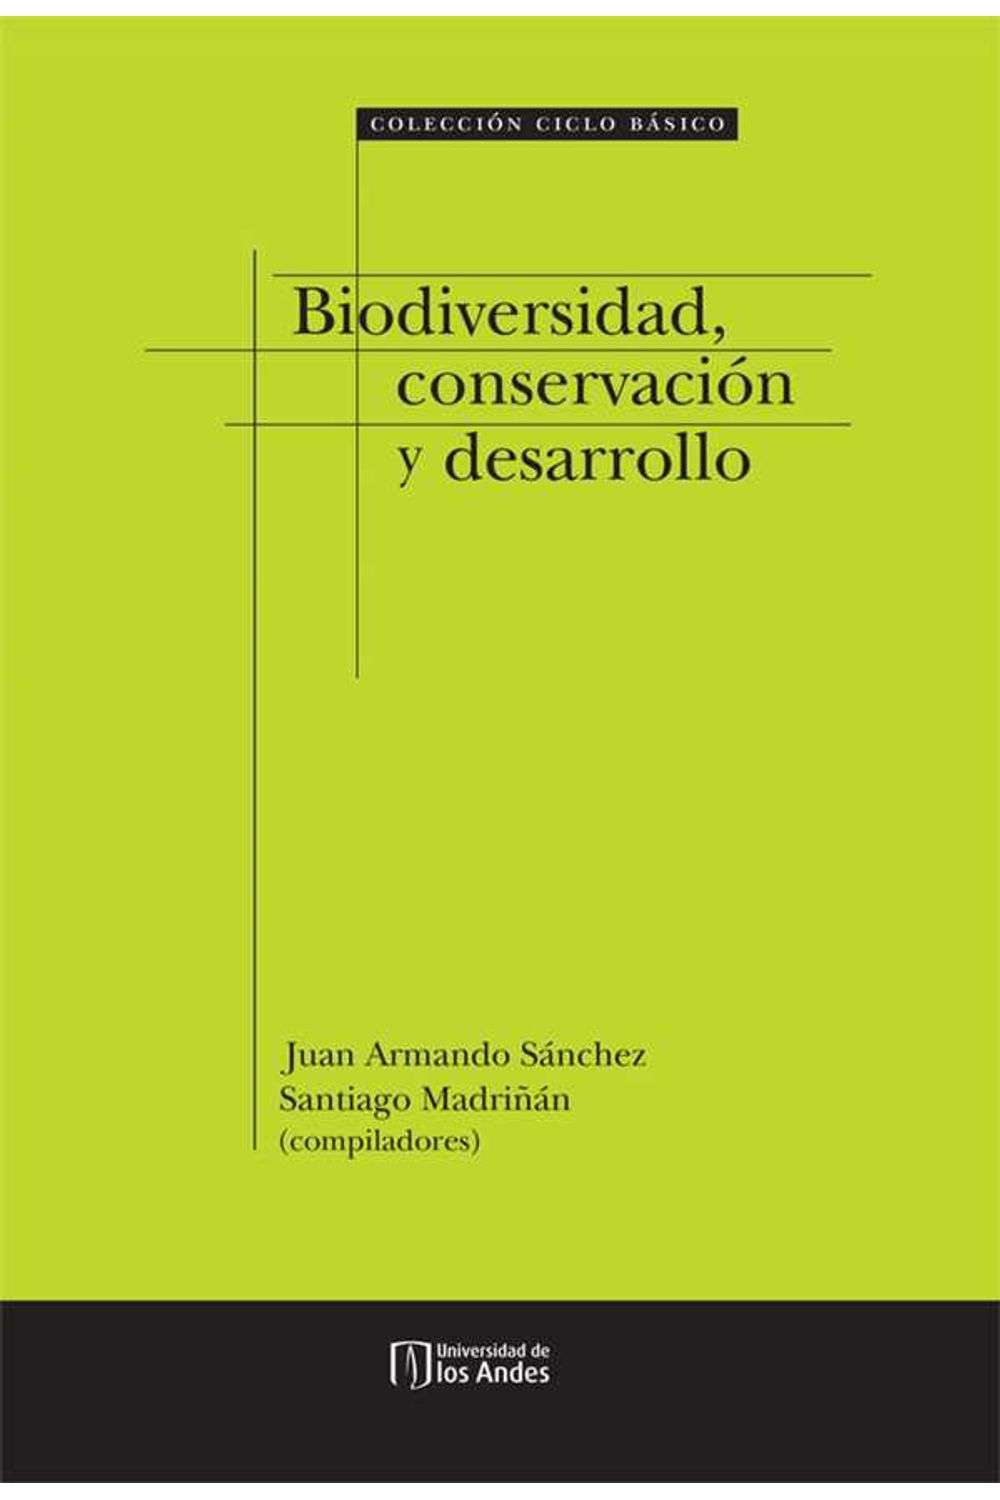 bw-biodiversidad-conservacioacuten-y-desarrollo-universidad-de-los-andes-9789586958233